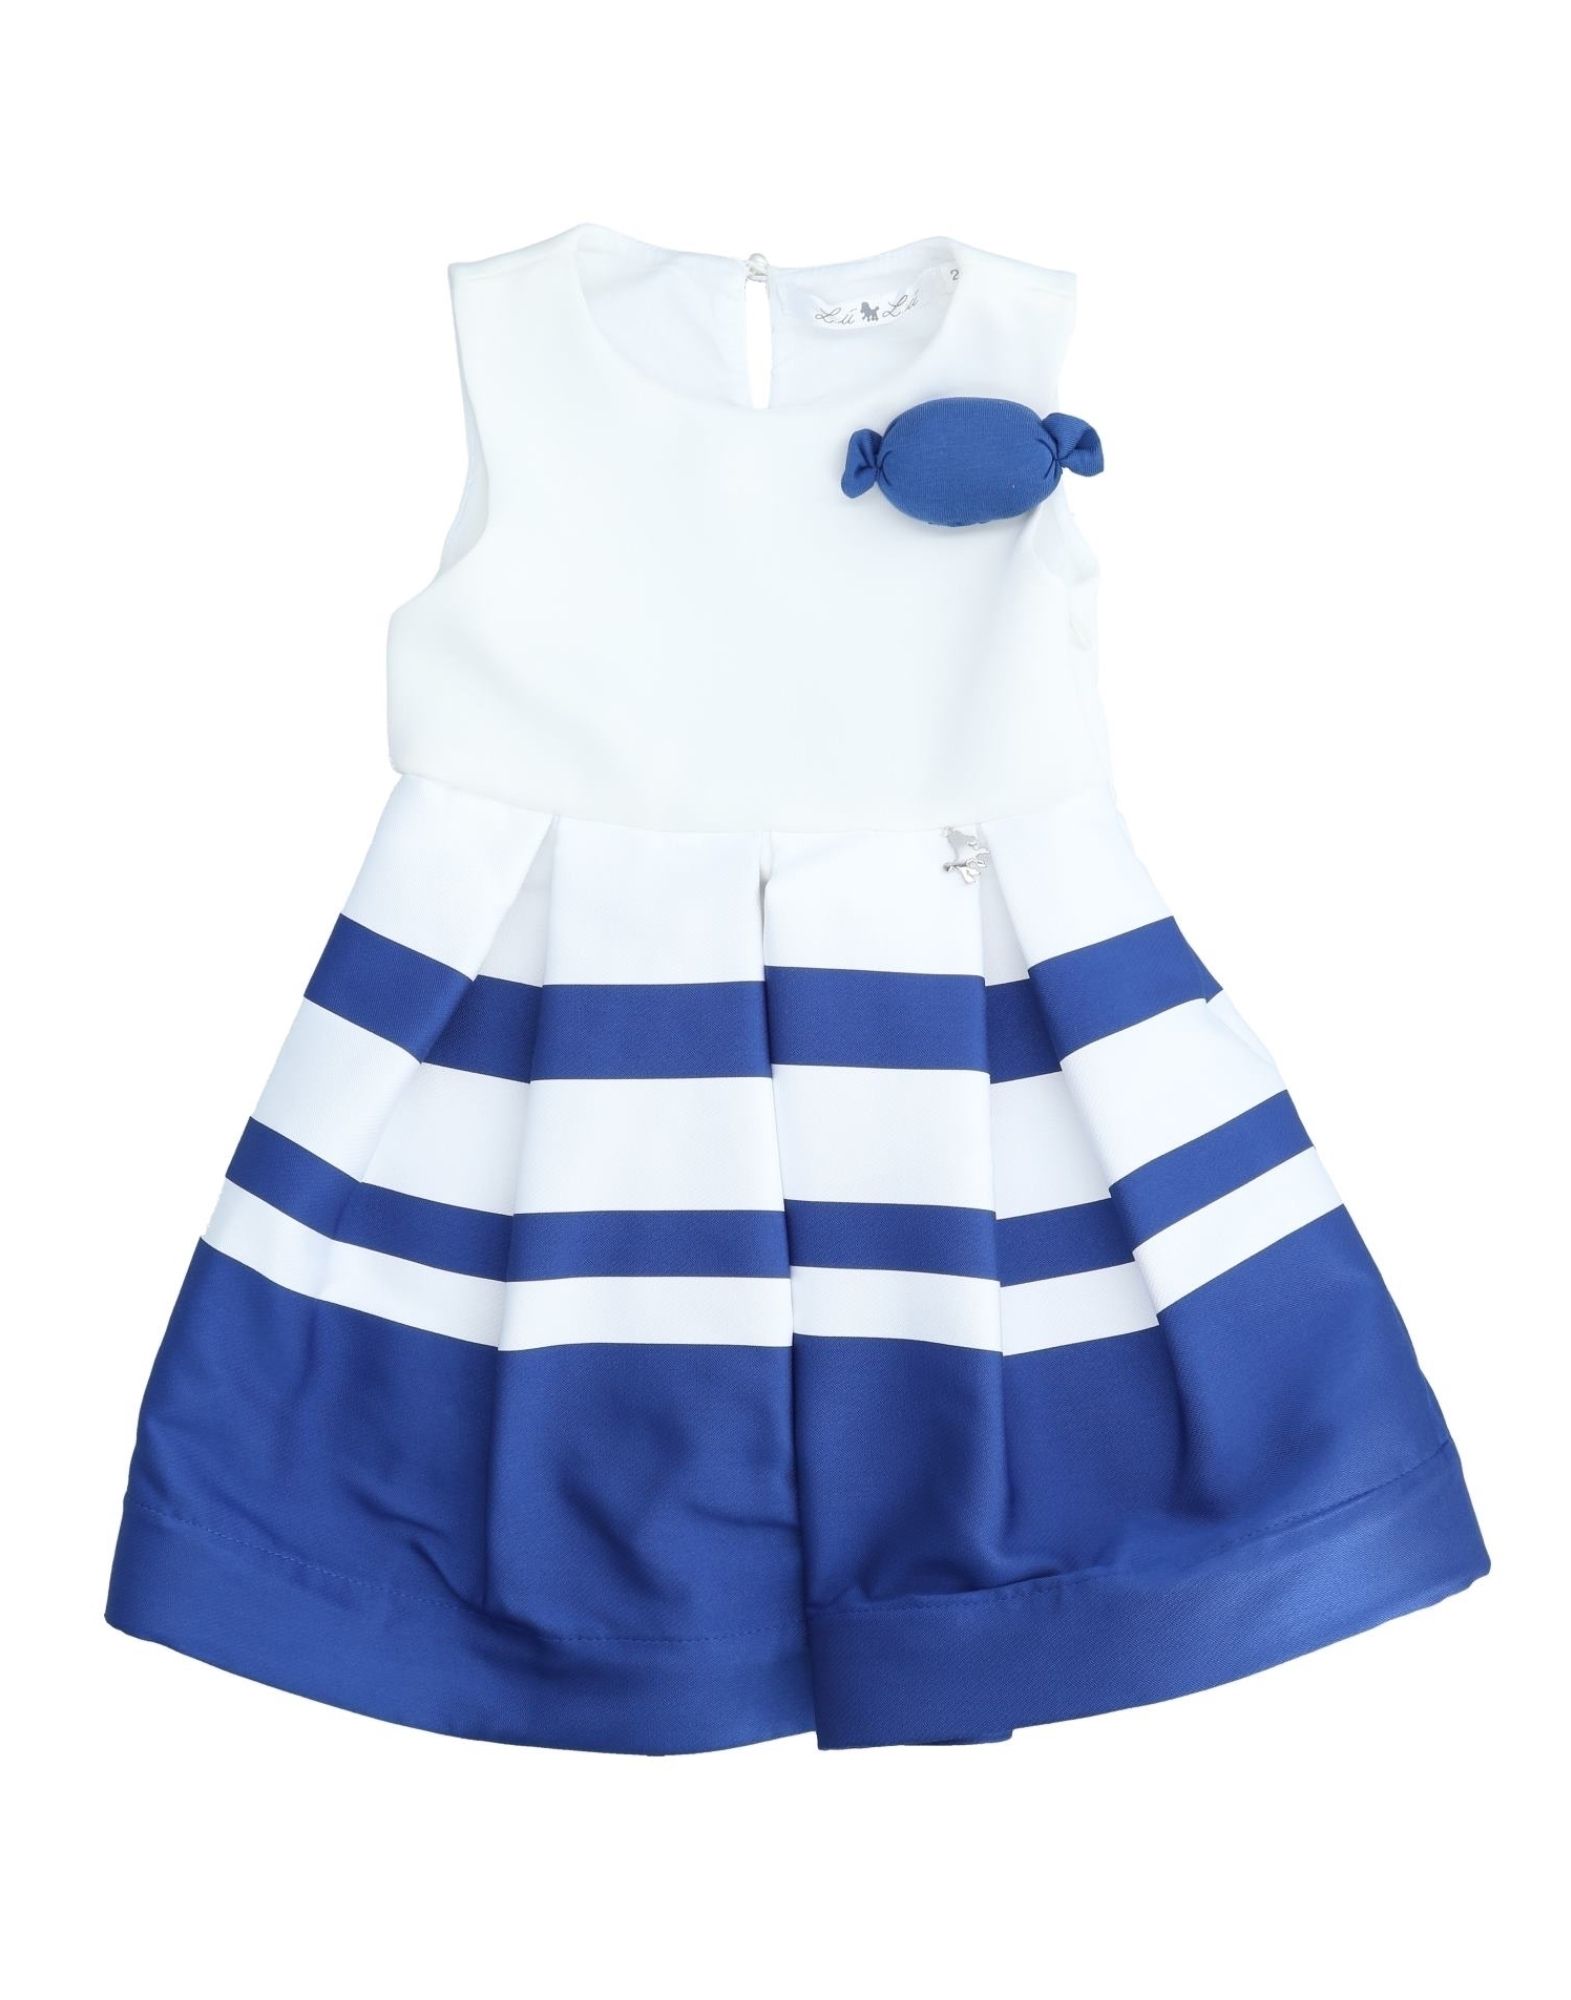 L:ú L:ú By Miss Grant Kids' Dresses In Blue